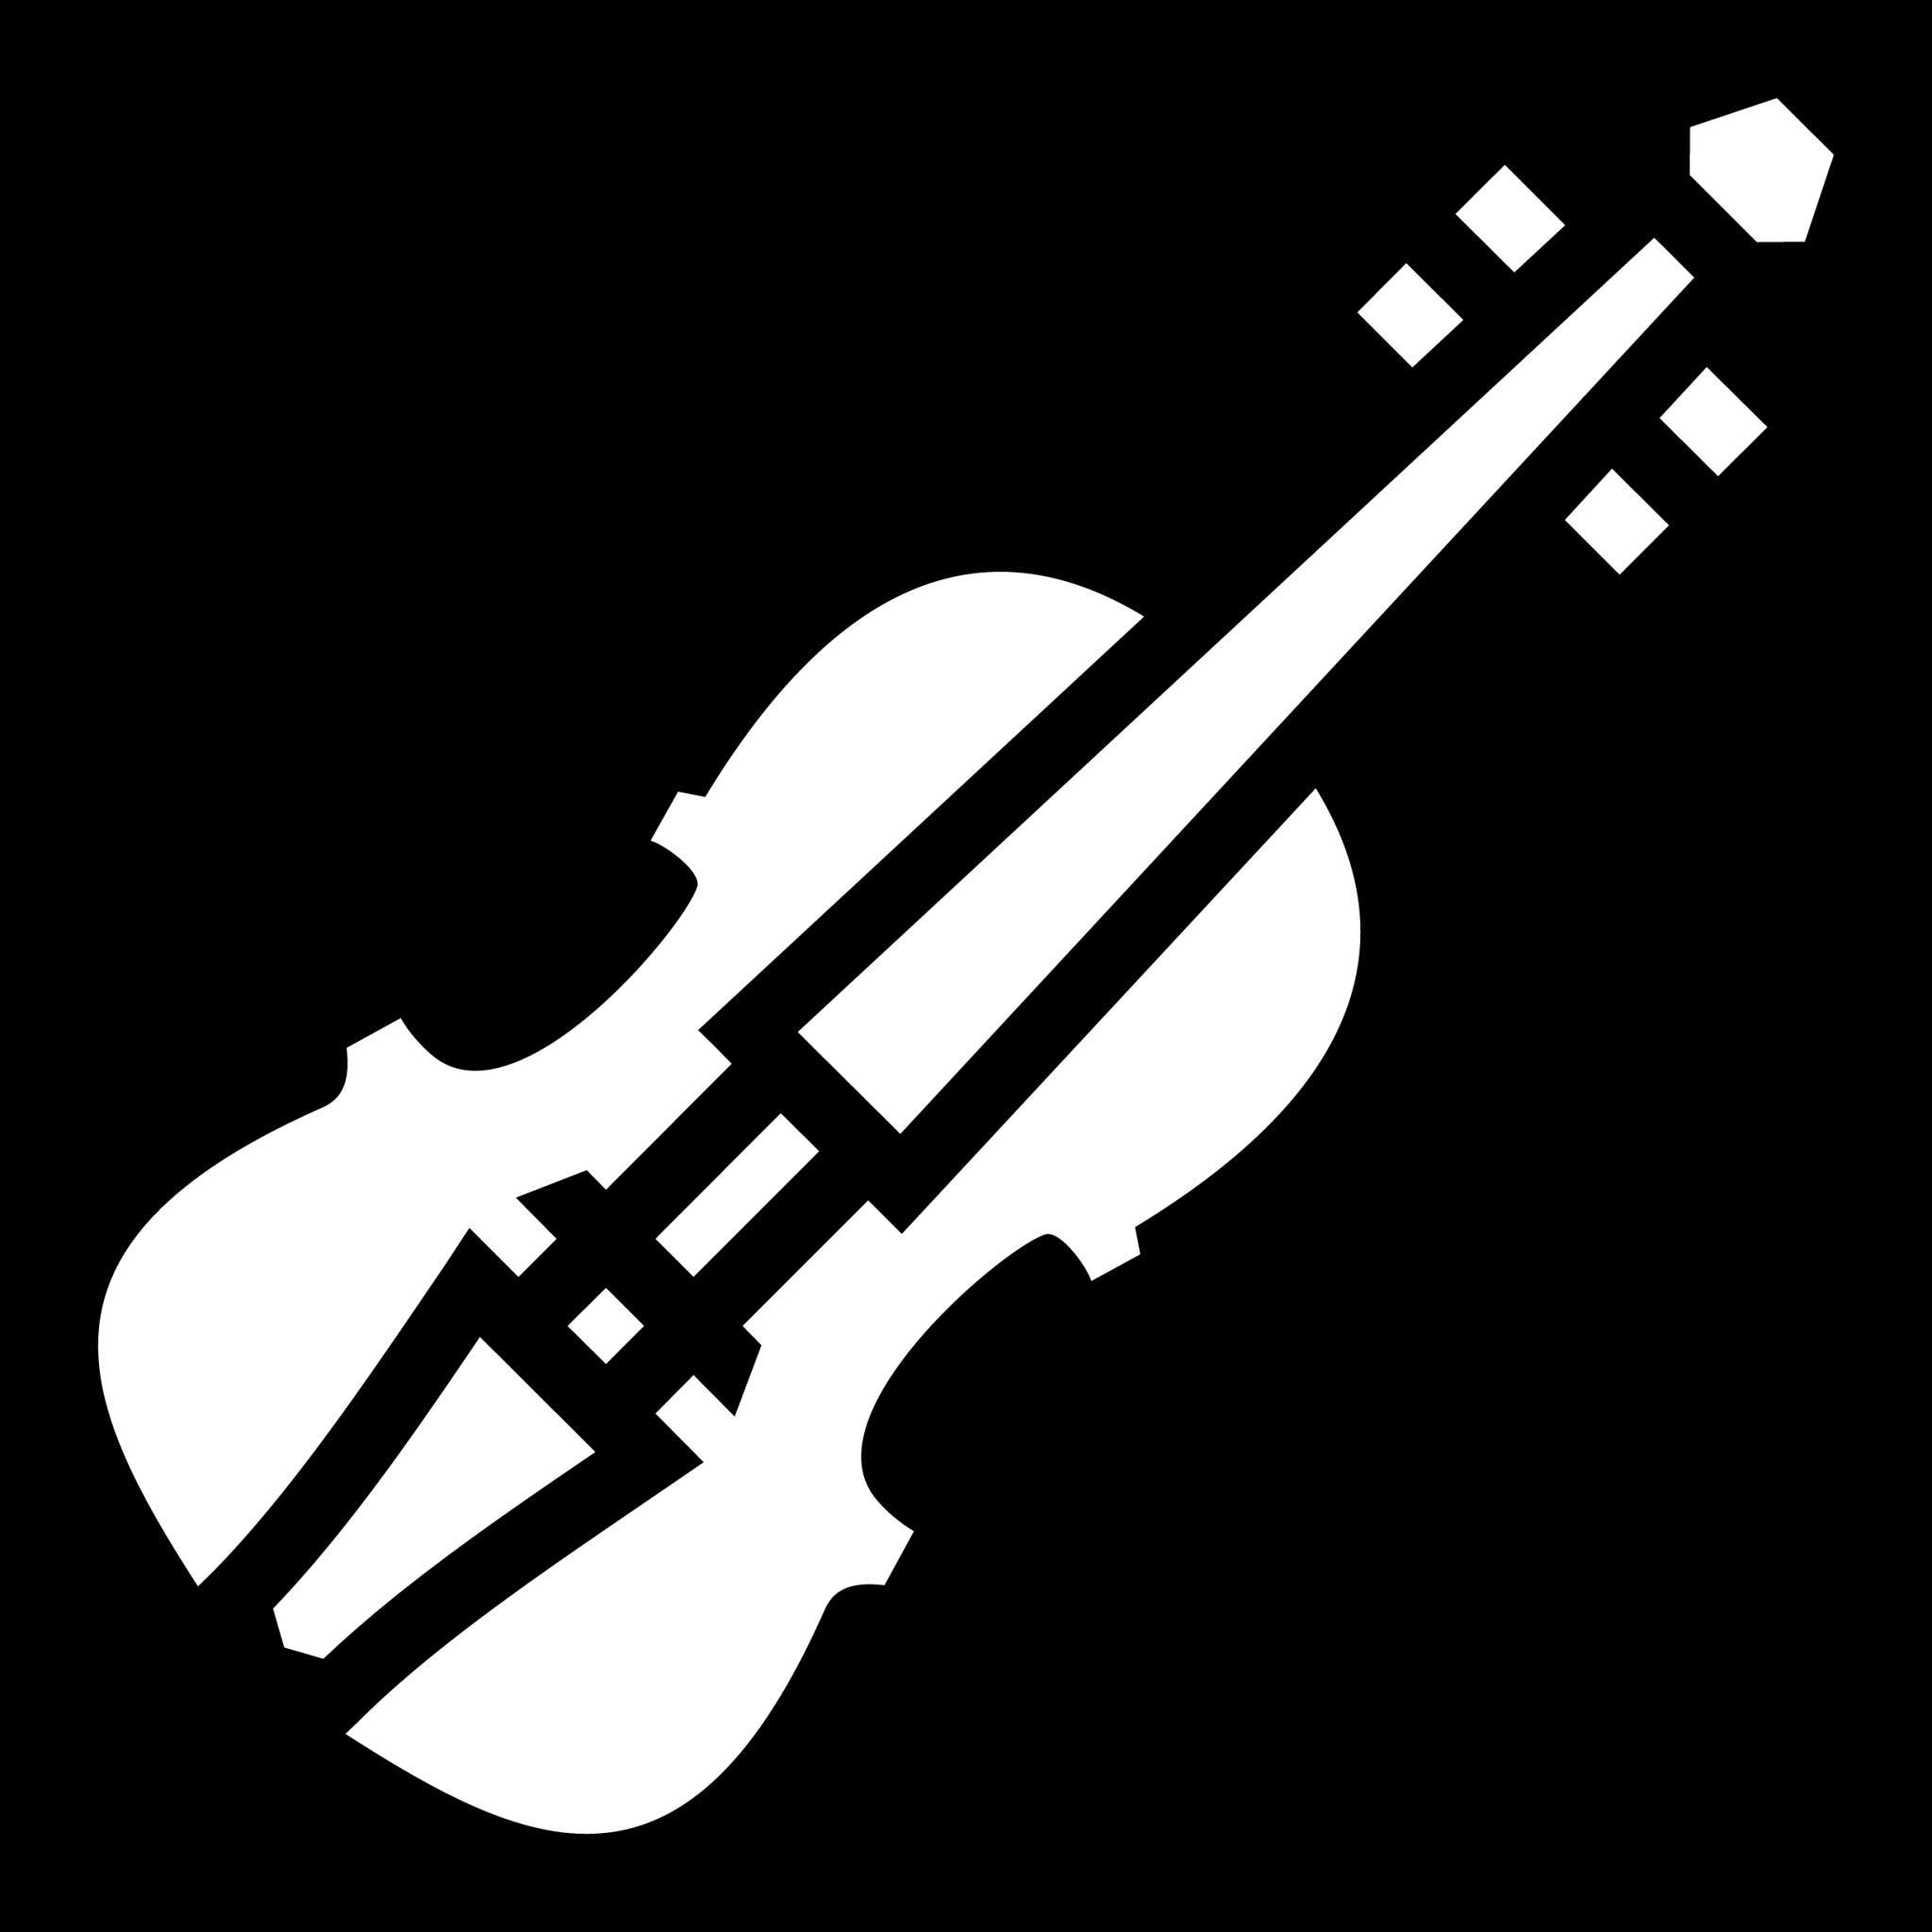 violin icon